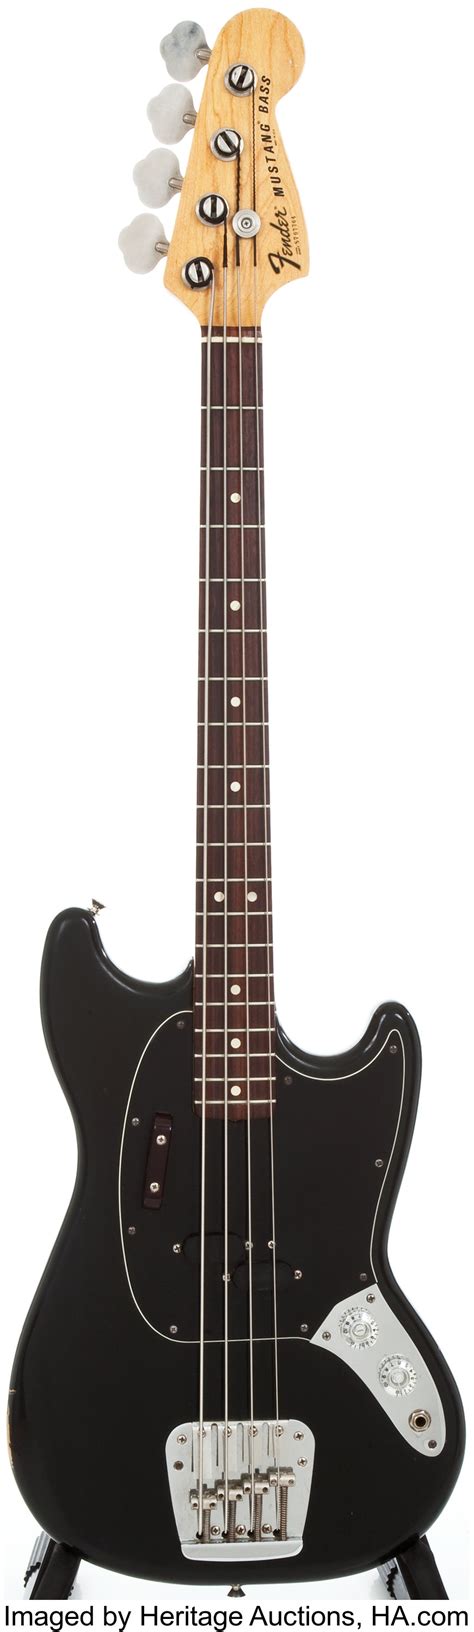 1977 Fender Mustang Bass Black Electric Bass Guitar S707764 Lot